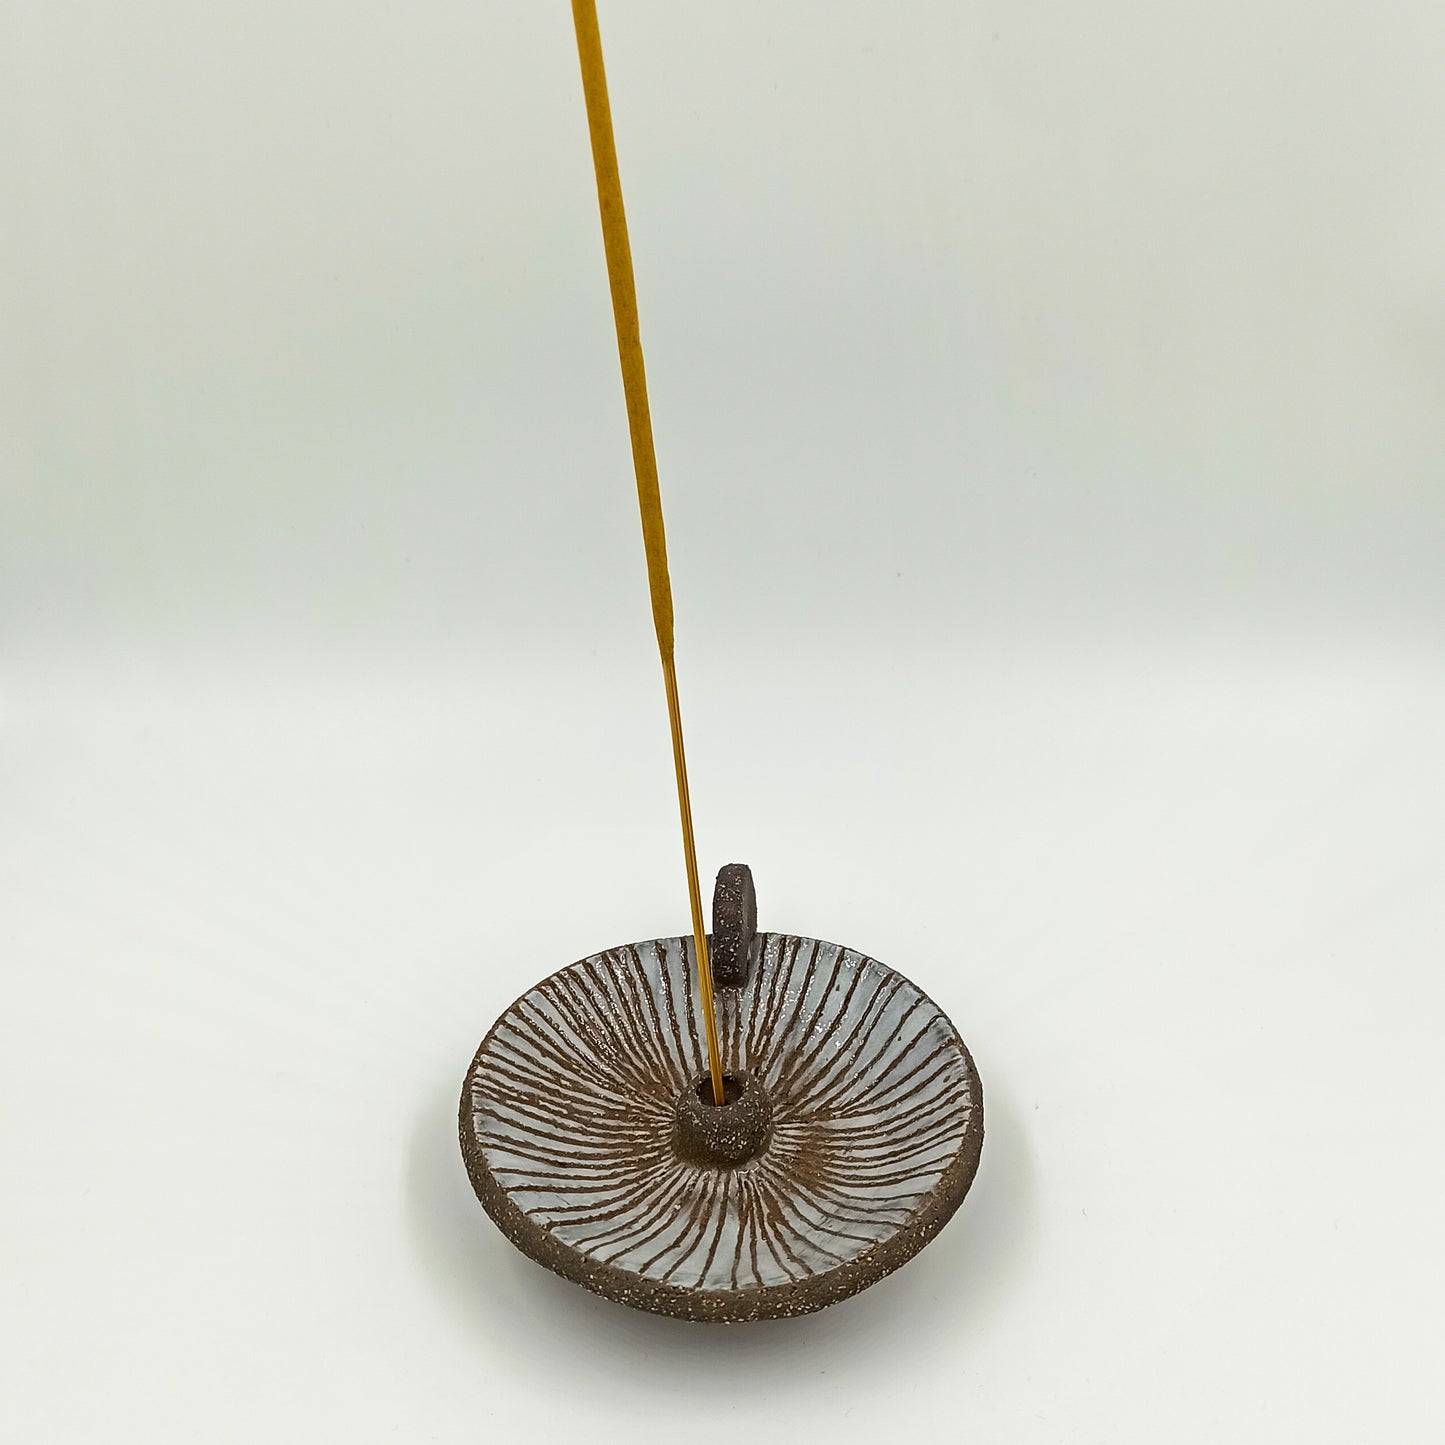 Ceramic incense holder Pottery incense burner